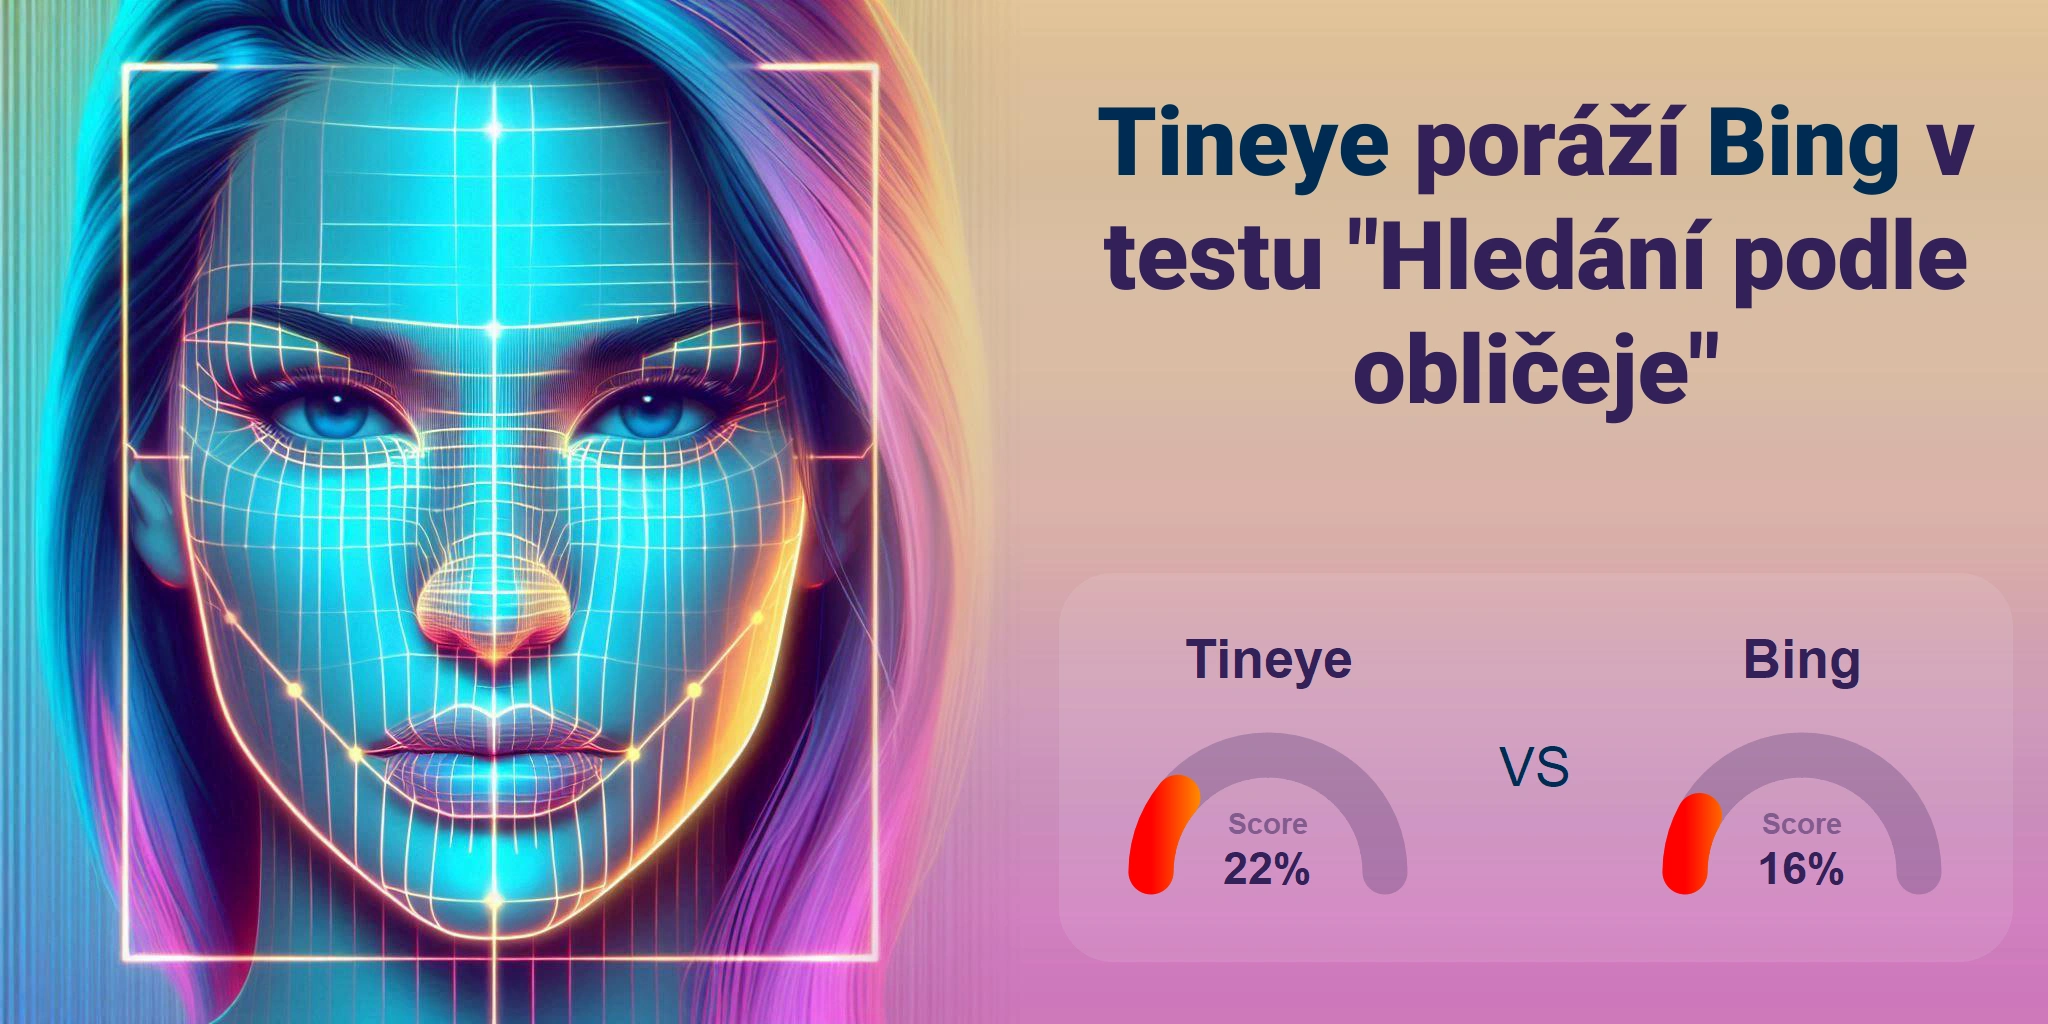 Který je lepší pro vyhledávání obličejů: <br>Tineye nebo Bing?